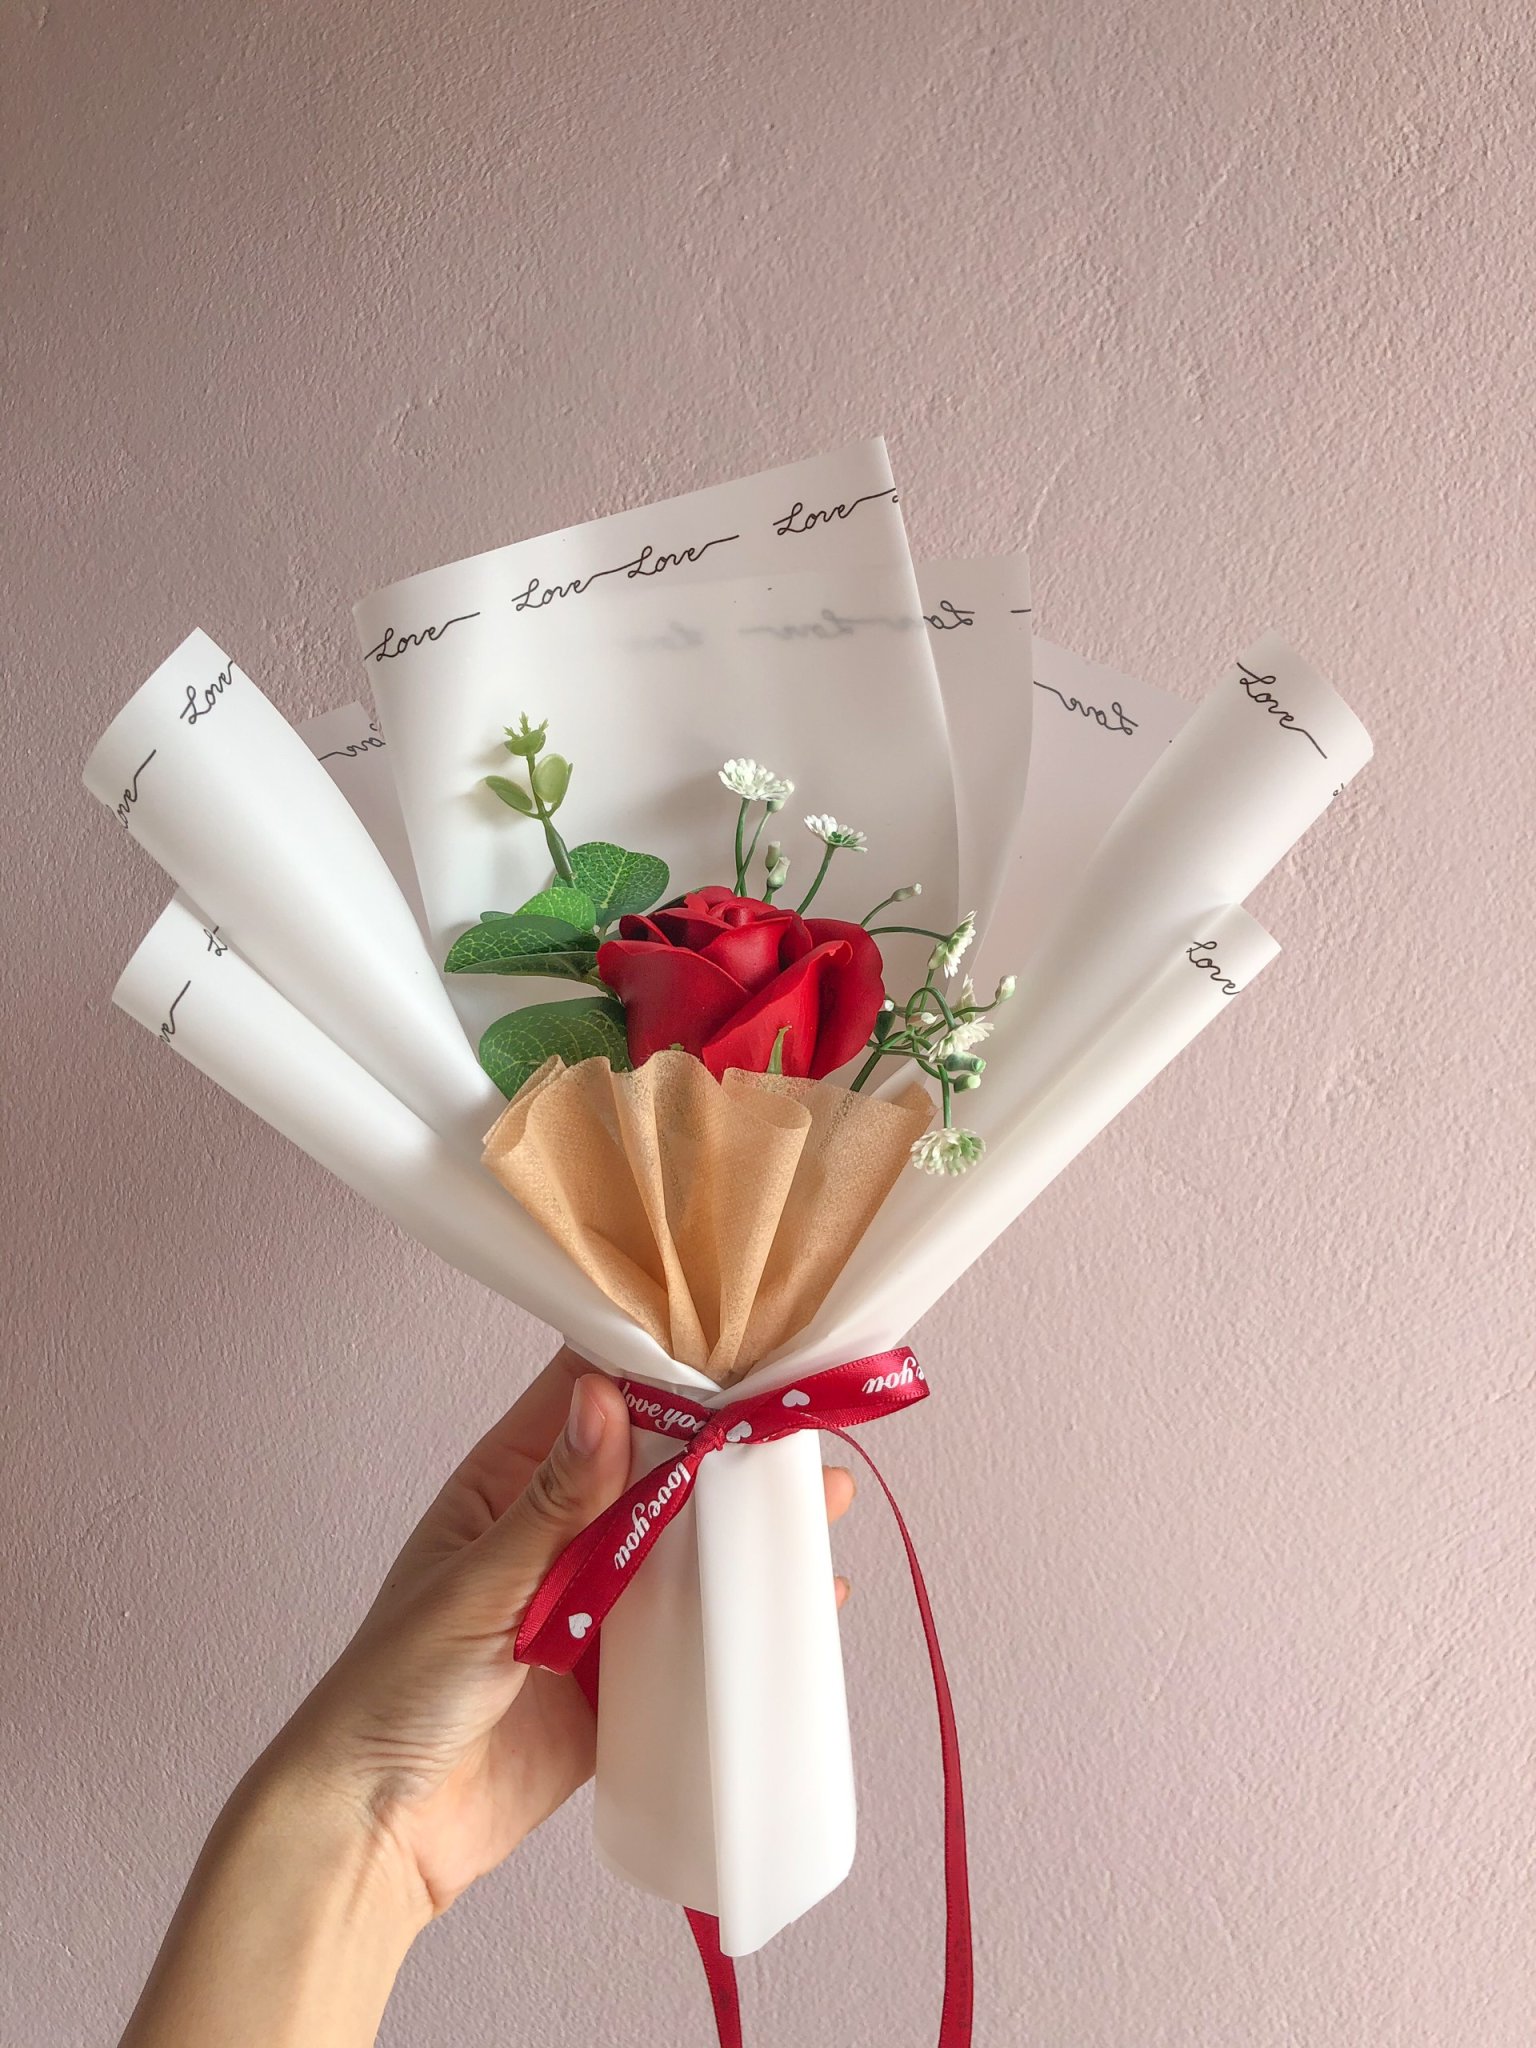 Bó hoa hồng sáp: Một bó hoa hồng sáp với sắc đỏ tươi sáng và hương thơm là món quà hoàn hảo cho người thân yêu của bạn. Bức tranh này đem đến cho bạn cảm giác ngọt ngào và hạnh phúc.